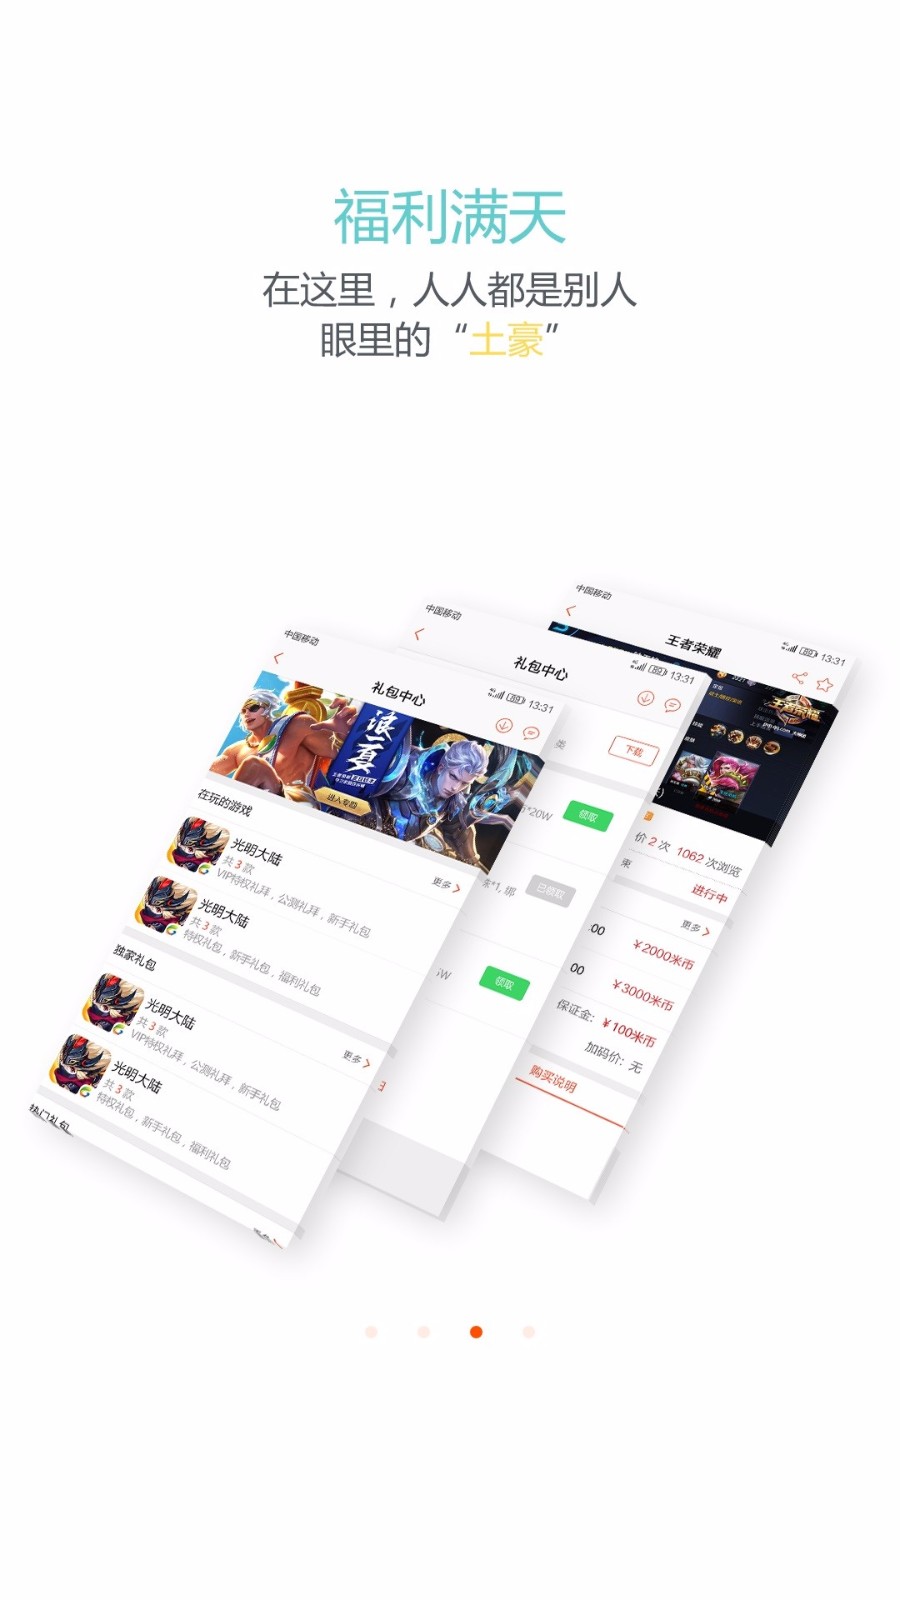 多米玩汕尾app开发应用公司